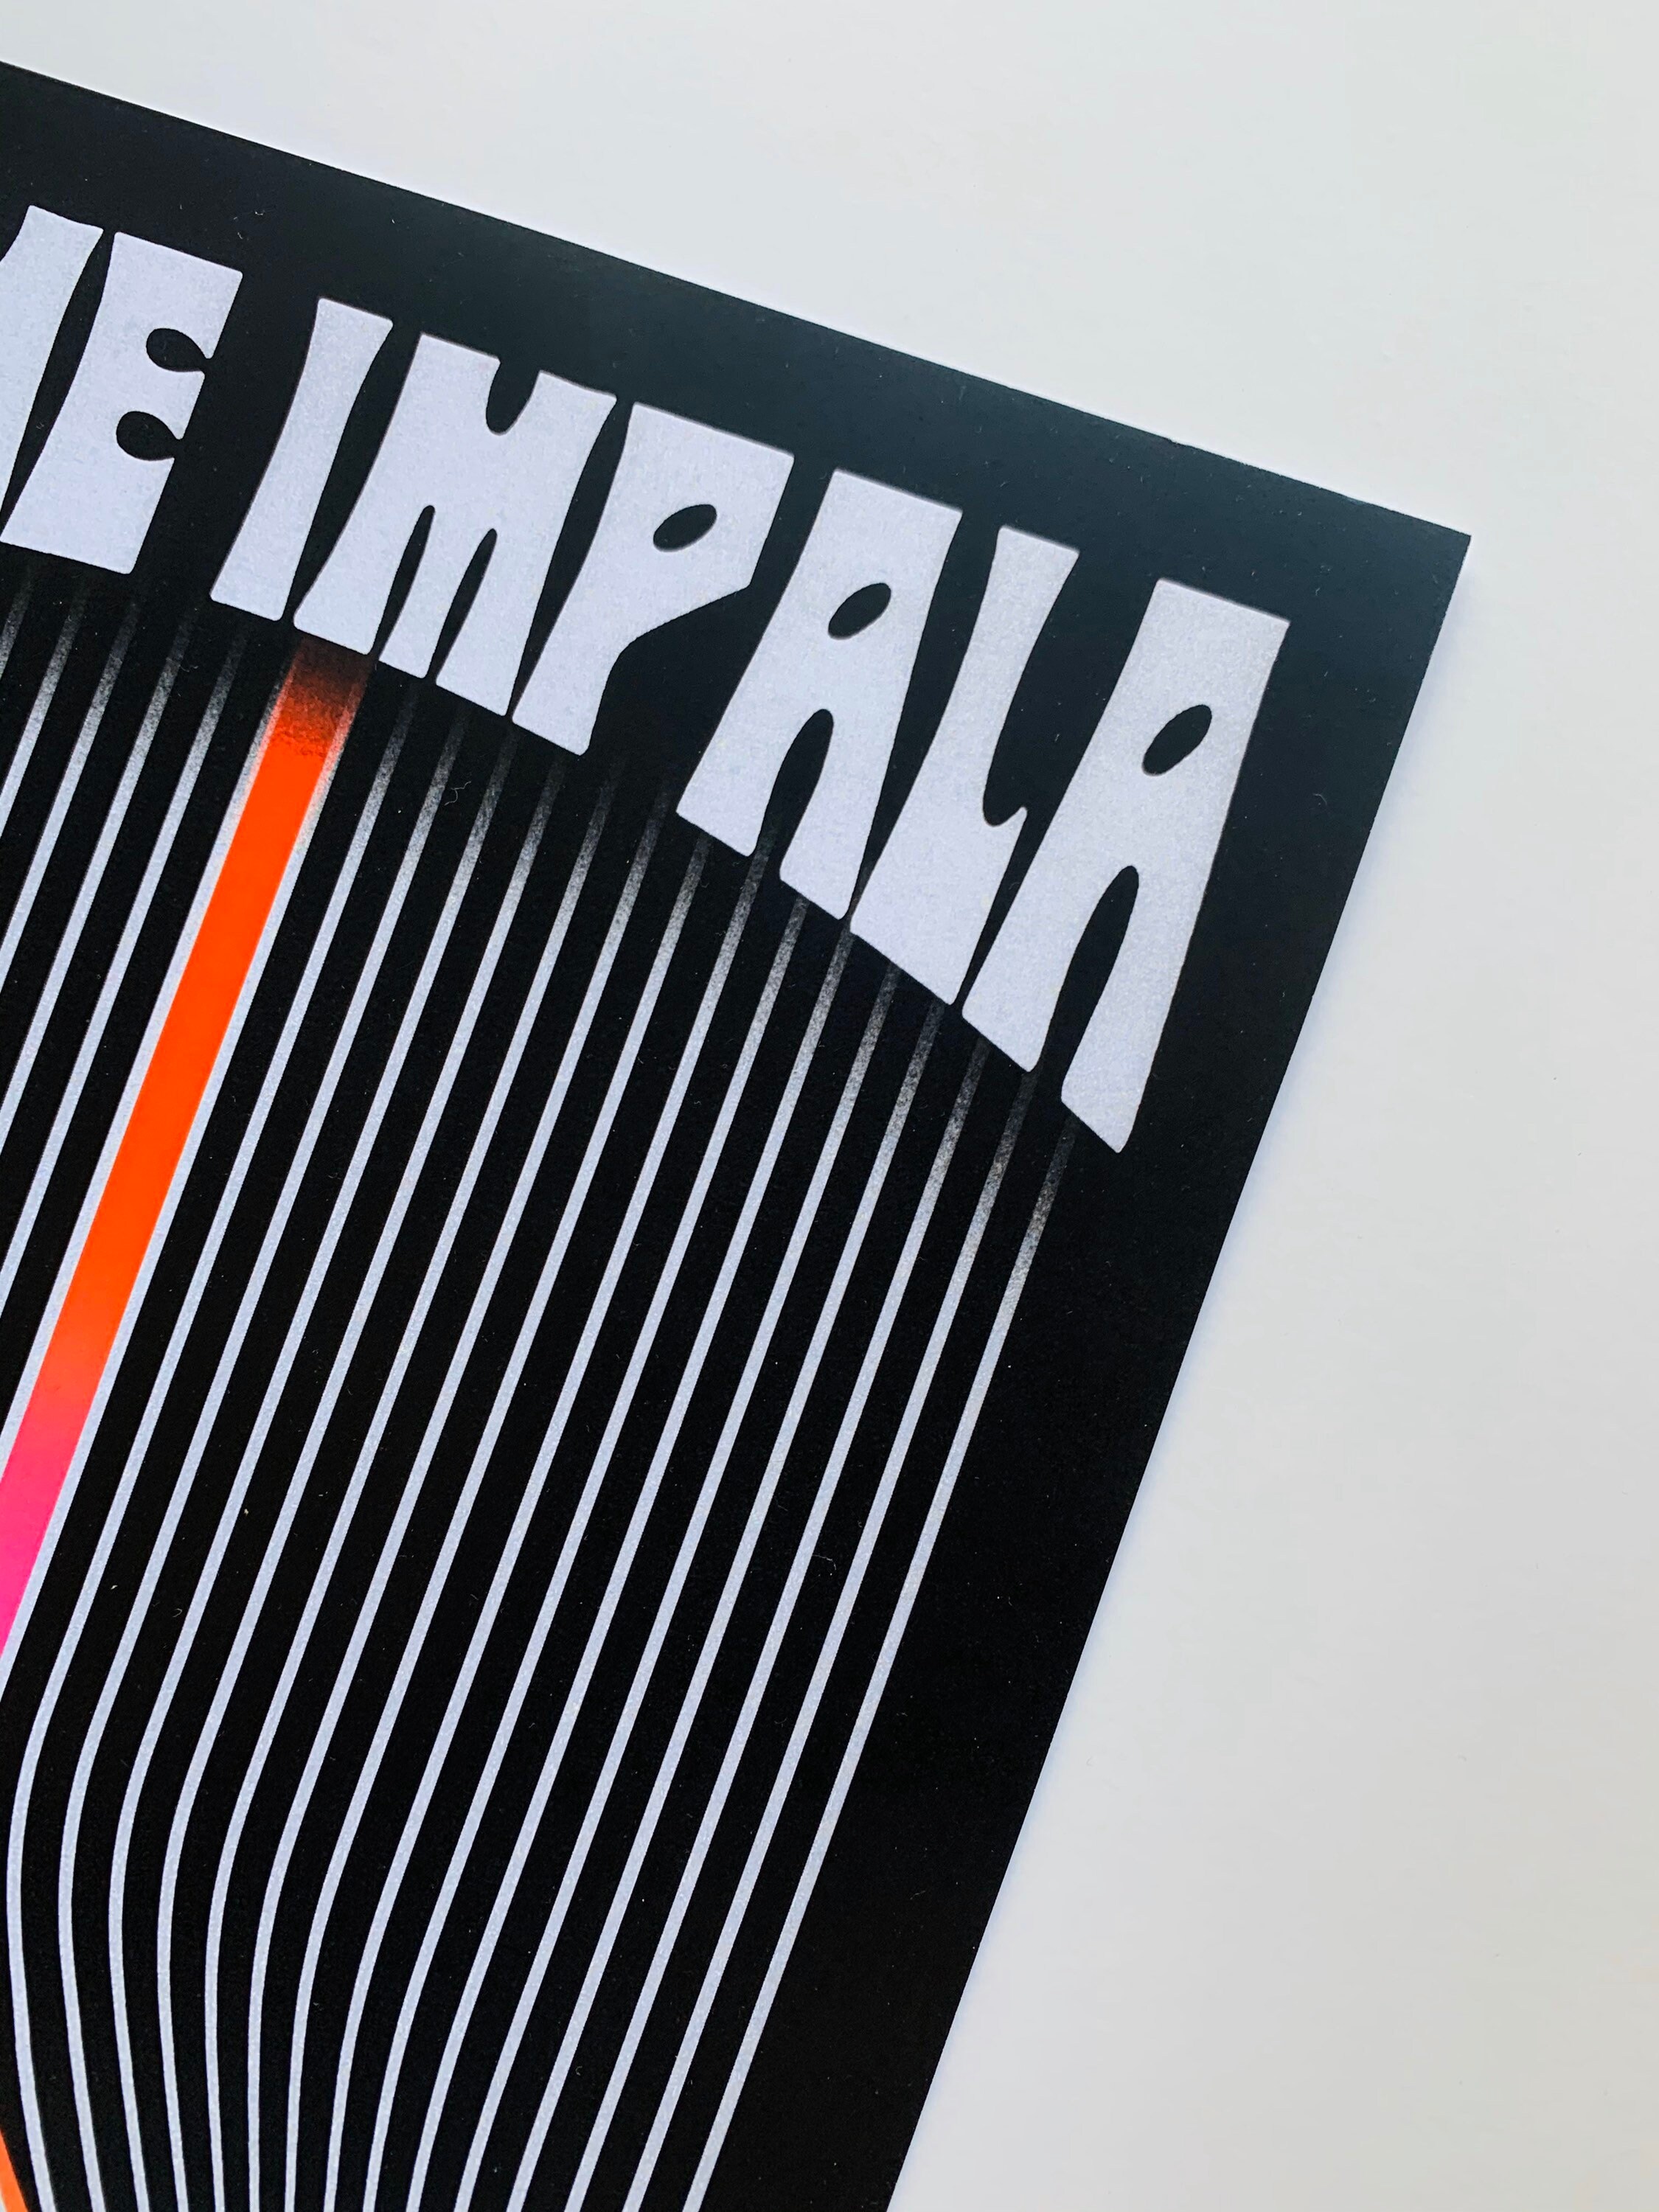 Tame Impala Currents Album Premium Music Star Art Pintura Póster Decoración de pared Imágenes Impresiones en lienzo Arte de la pared Impresión en lienzo-50x70cm Sin marco